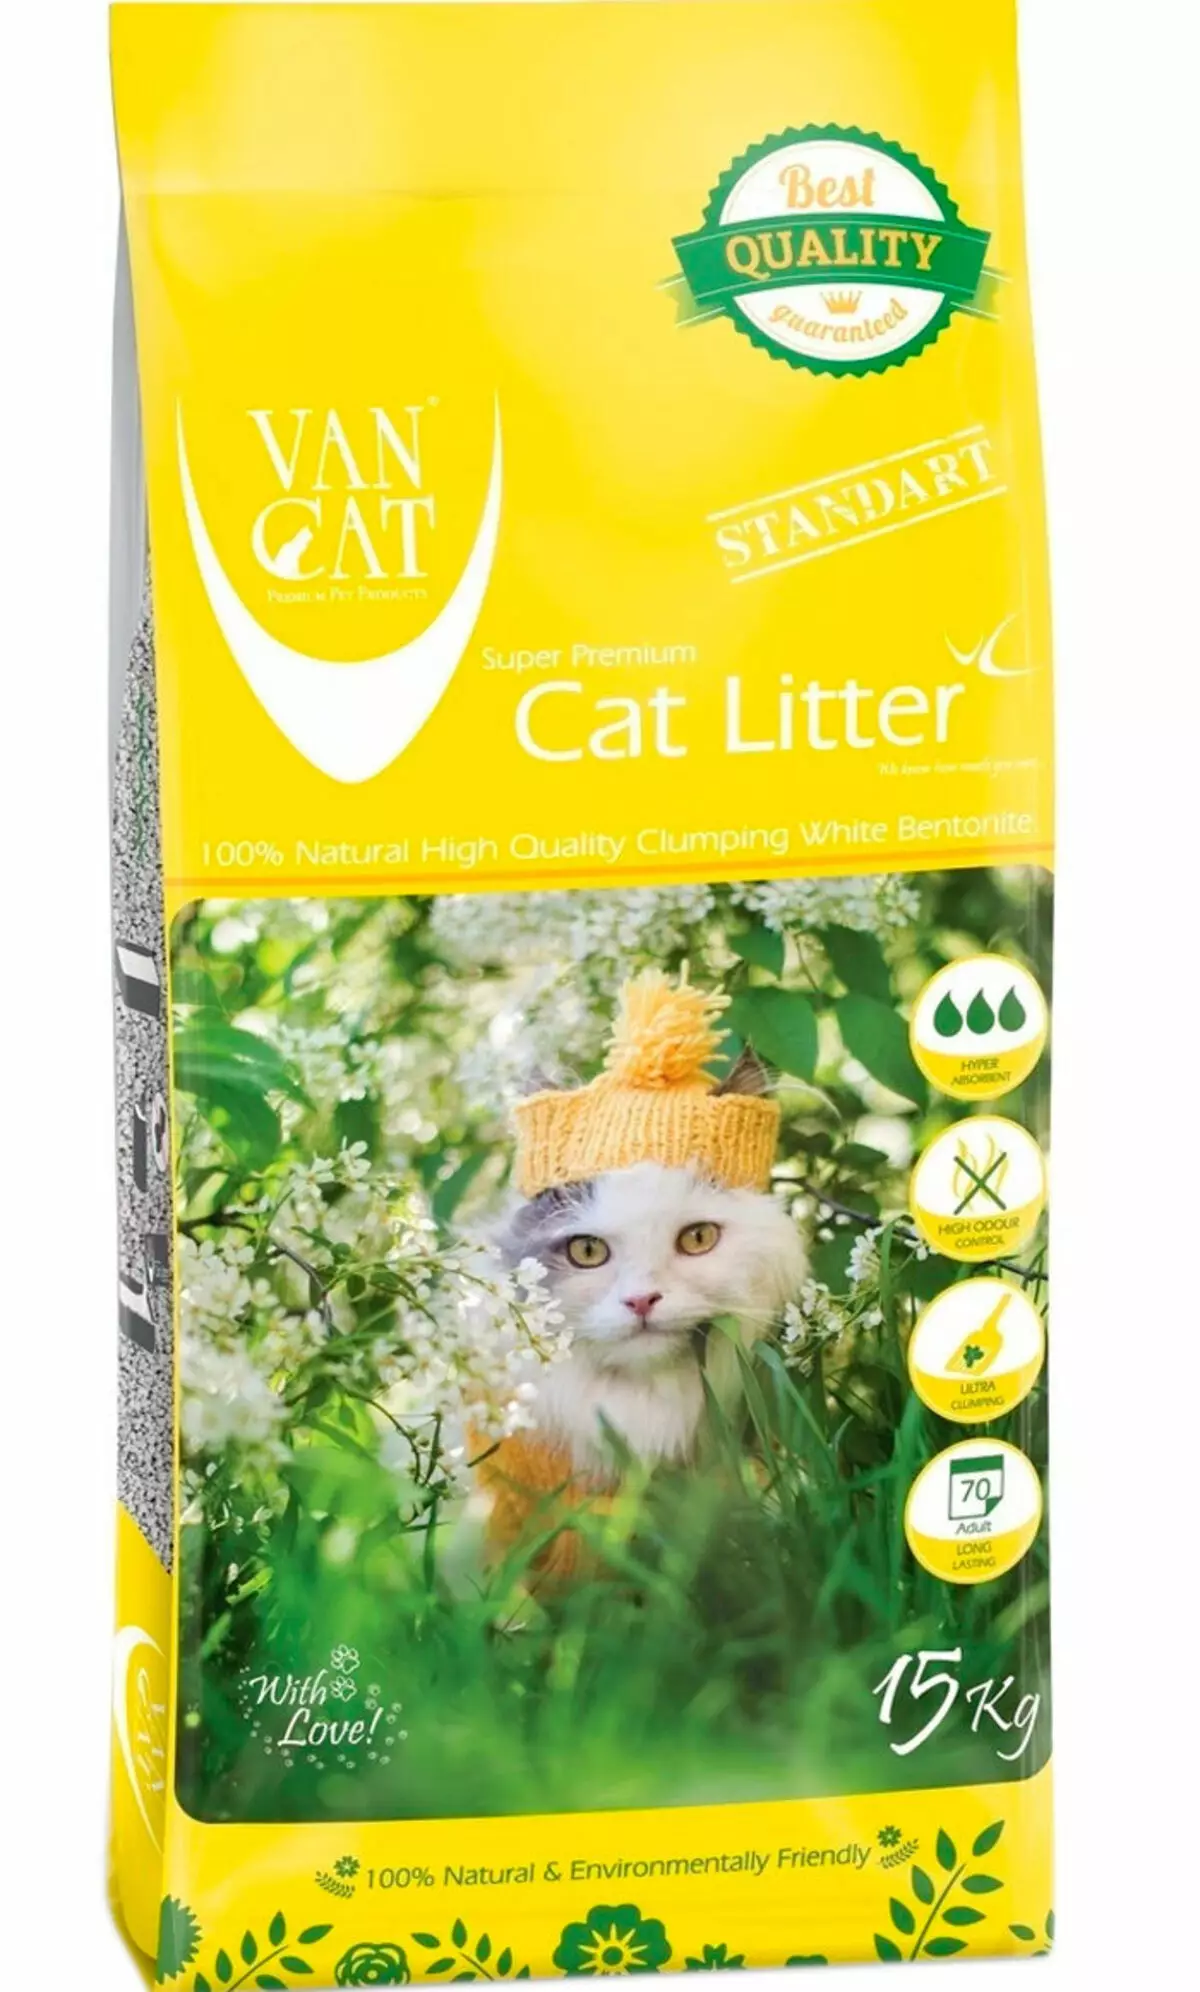 Наповнювачі Van Cat: грудкує наповнювач 20 кг для котячого туалету «100% Натуральний» і Standart, інші наповнювачі для кішок, відгуки 22612_16